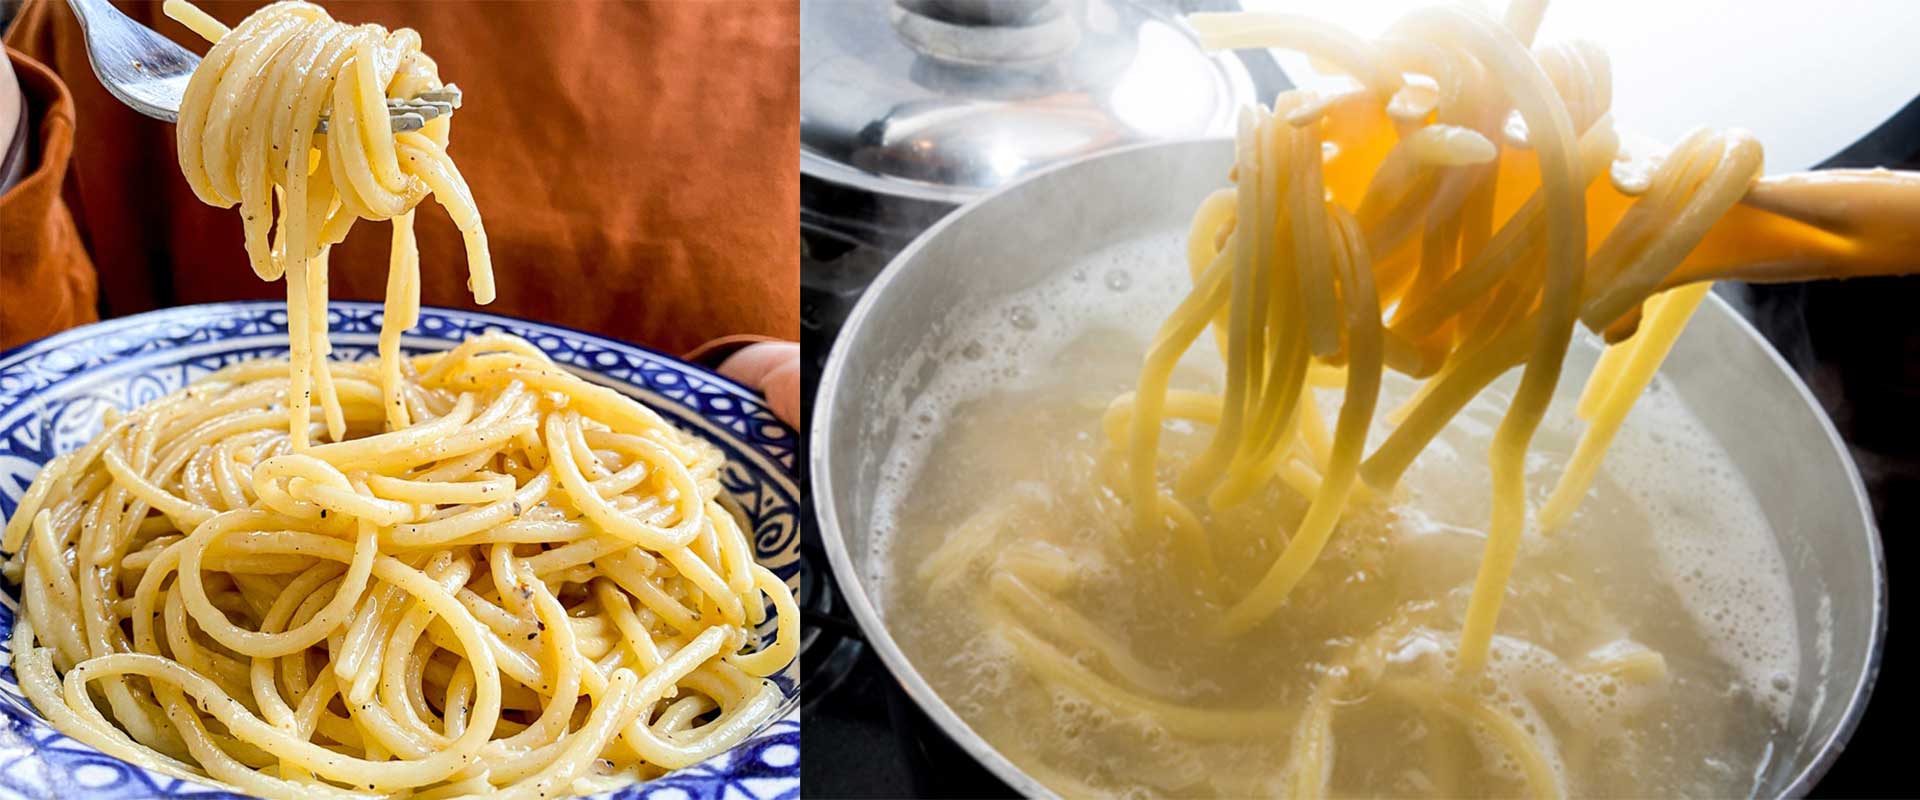 پخت حرفه ای و اصولی ماکارونی یا اسپاگتی در آب جوشان